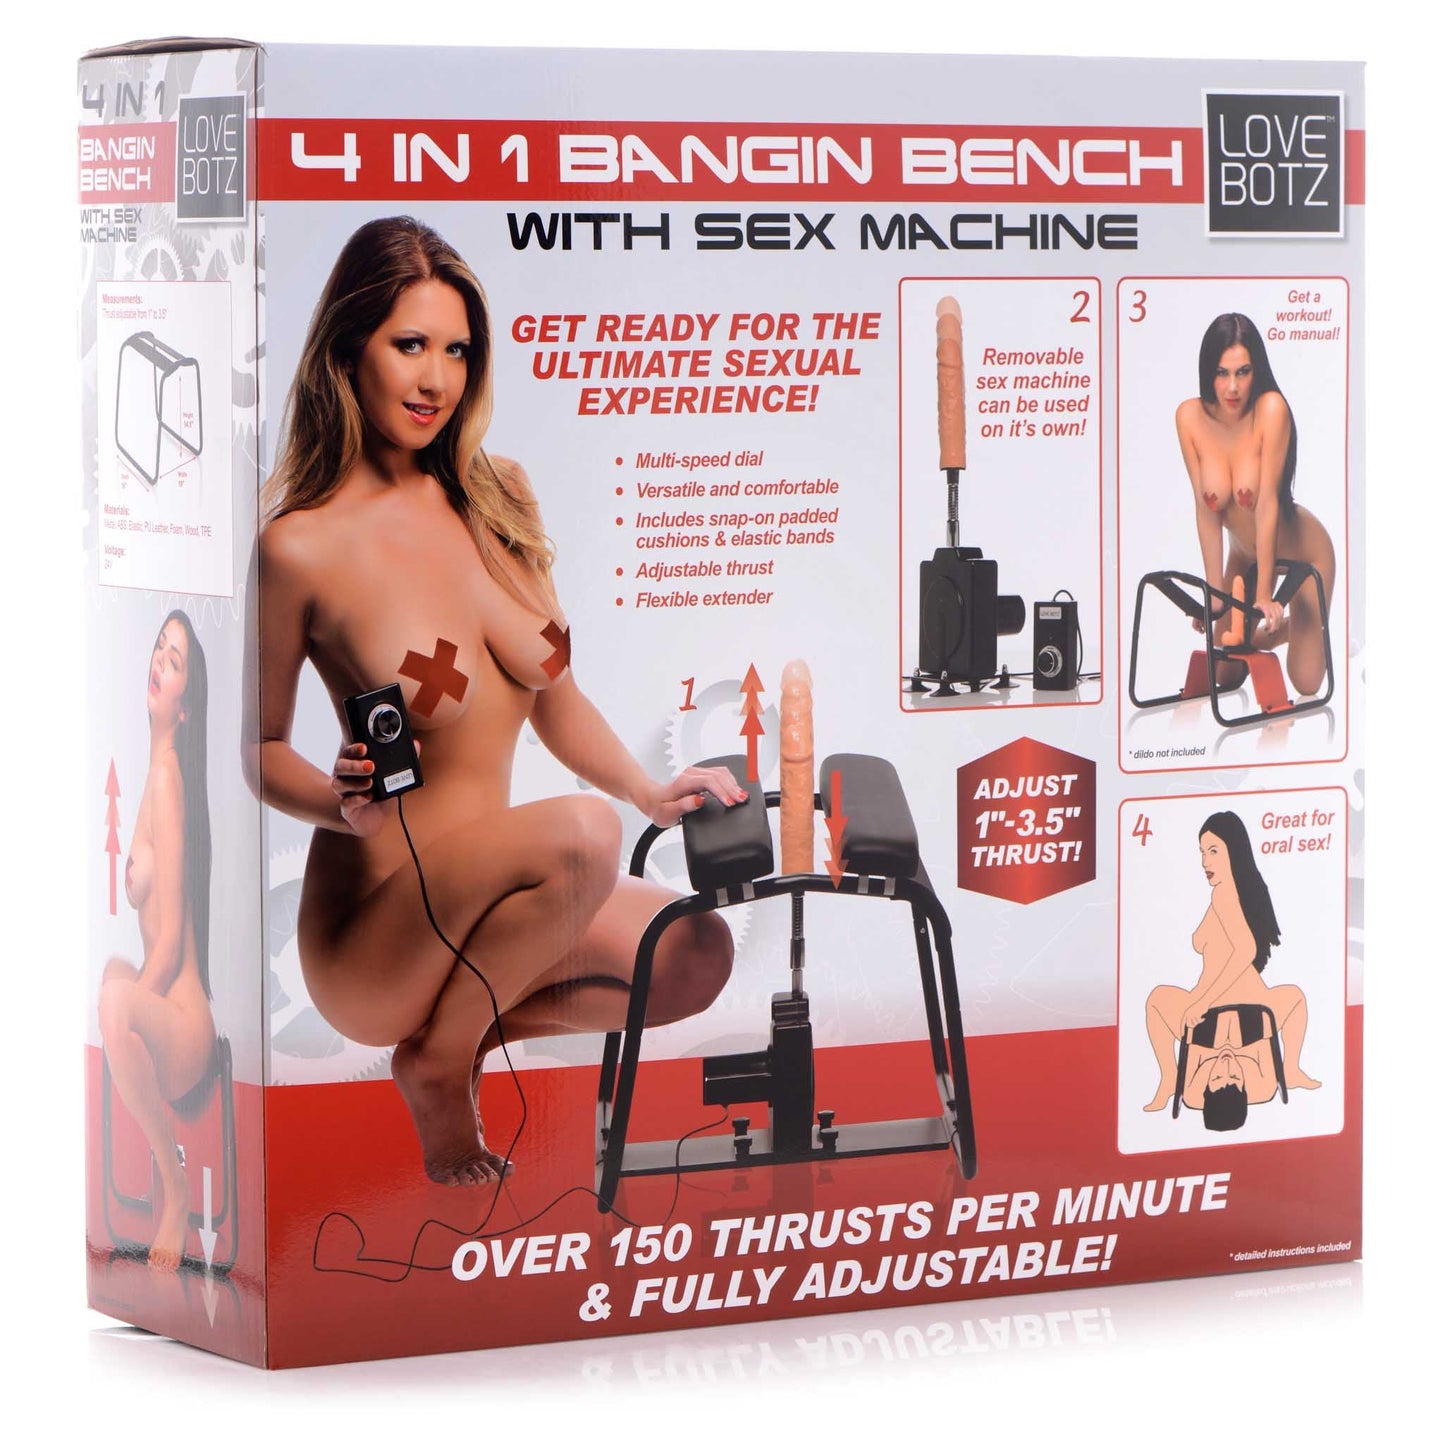 LoveBotz 4-in-1 Bangin Bench with Sex Machine